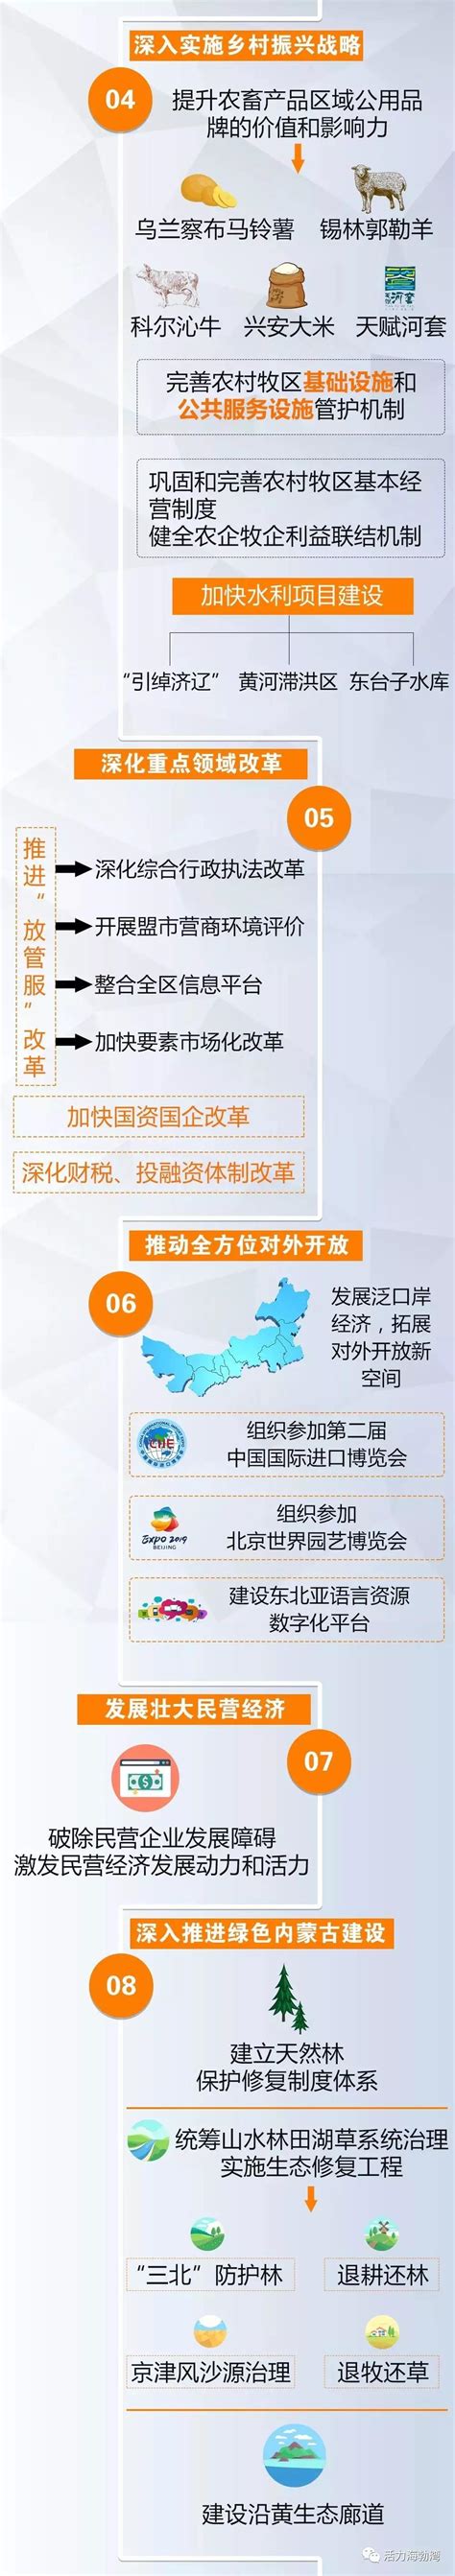 图解内蒙古自治区2019年政府工作报告 - 政务要闻 - 新闻资讯